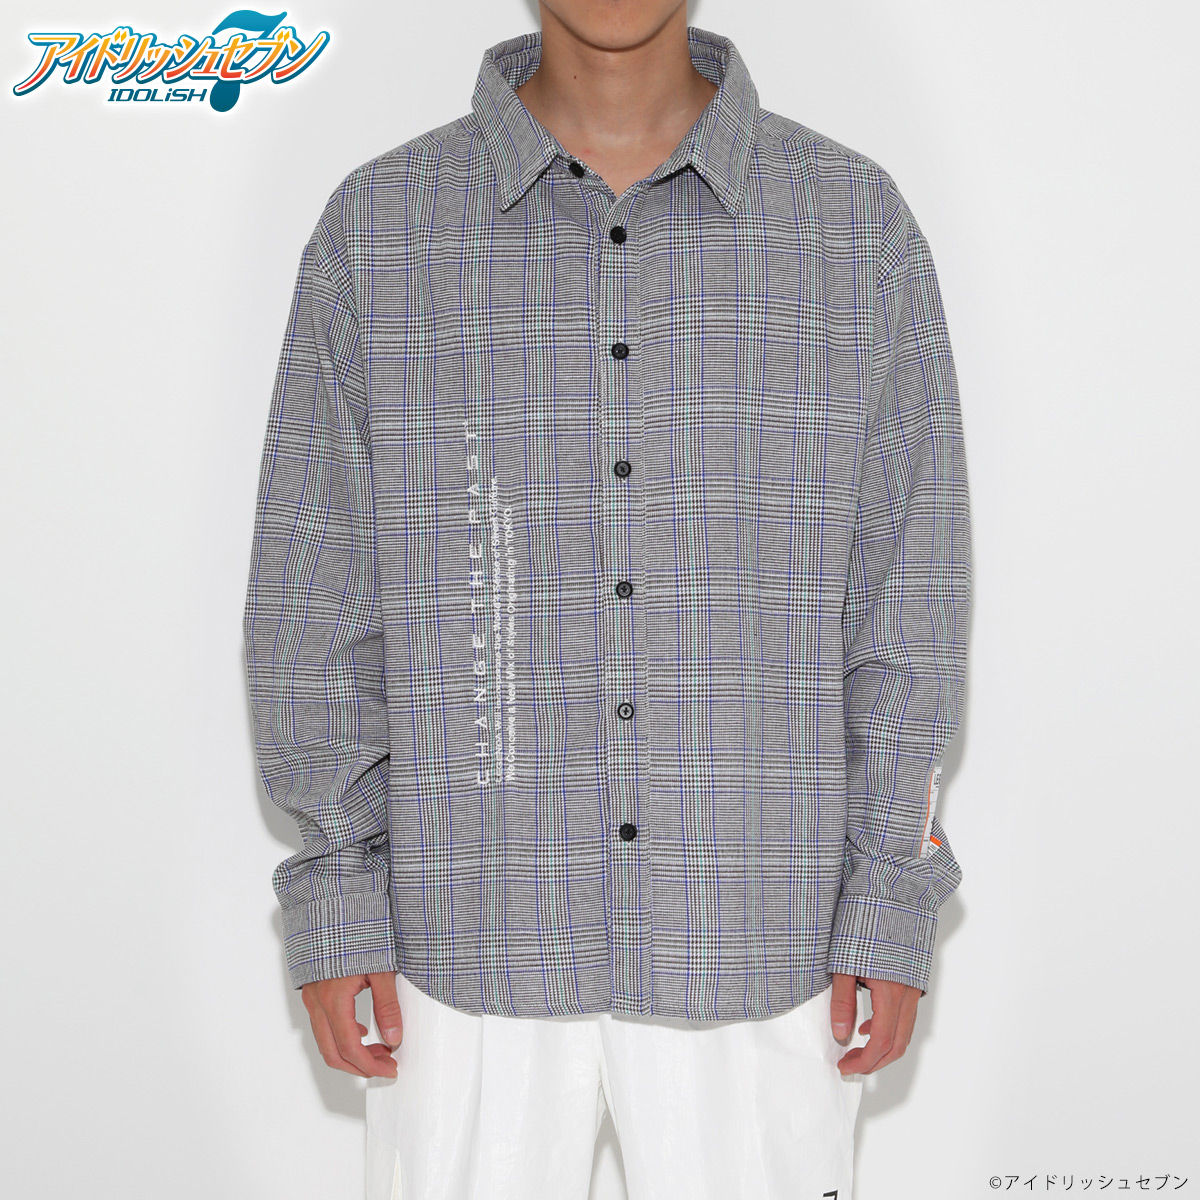 YAMATO NIKAIDO Over sized Check shirts